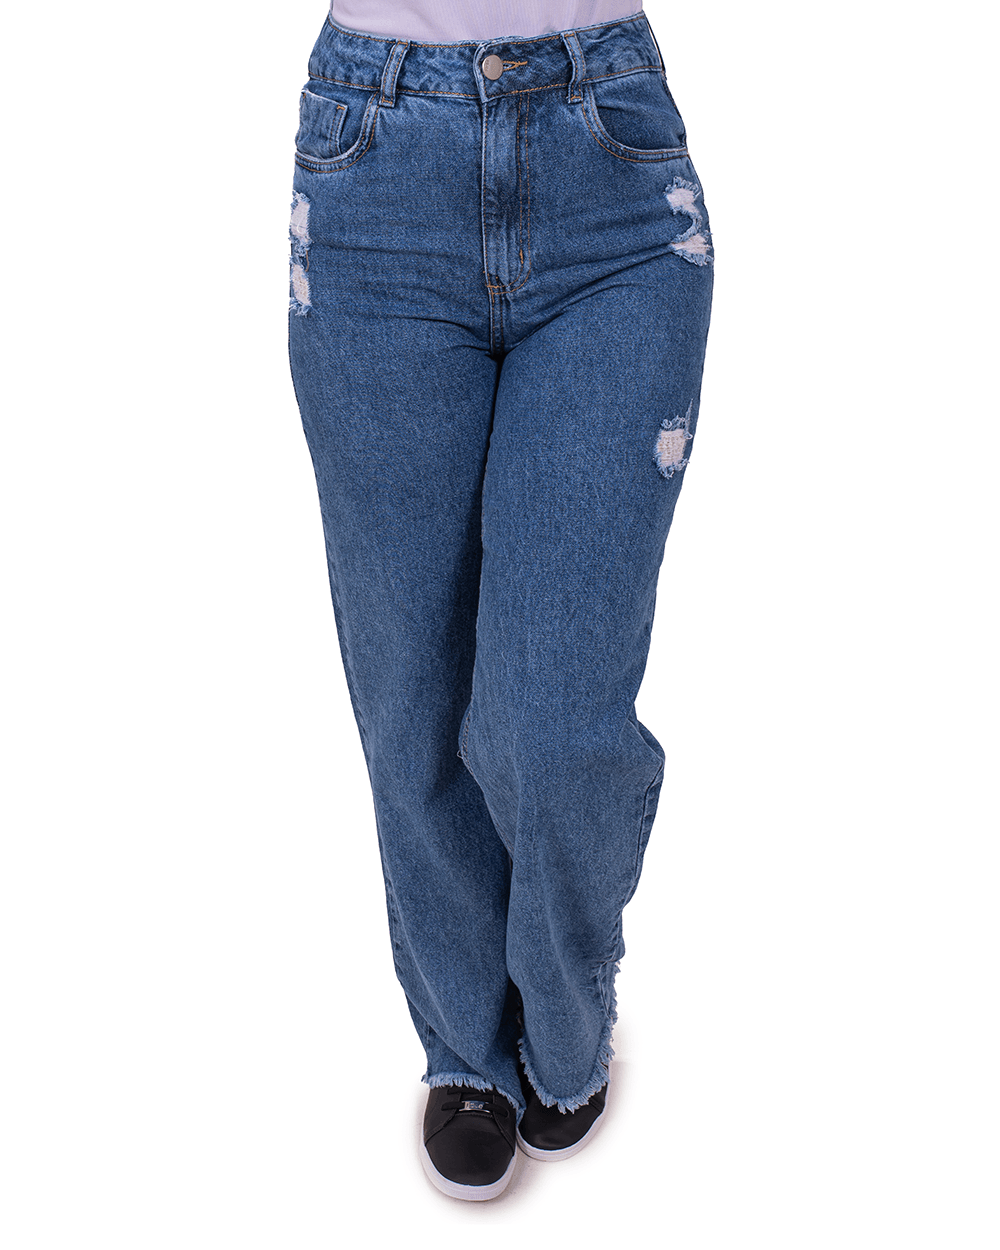 Calça Jeans Feminina Plus Size Wide Leg com Rasgos e Barra